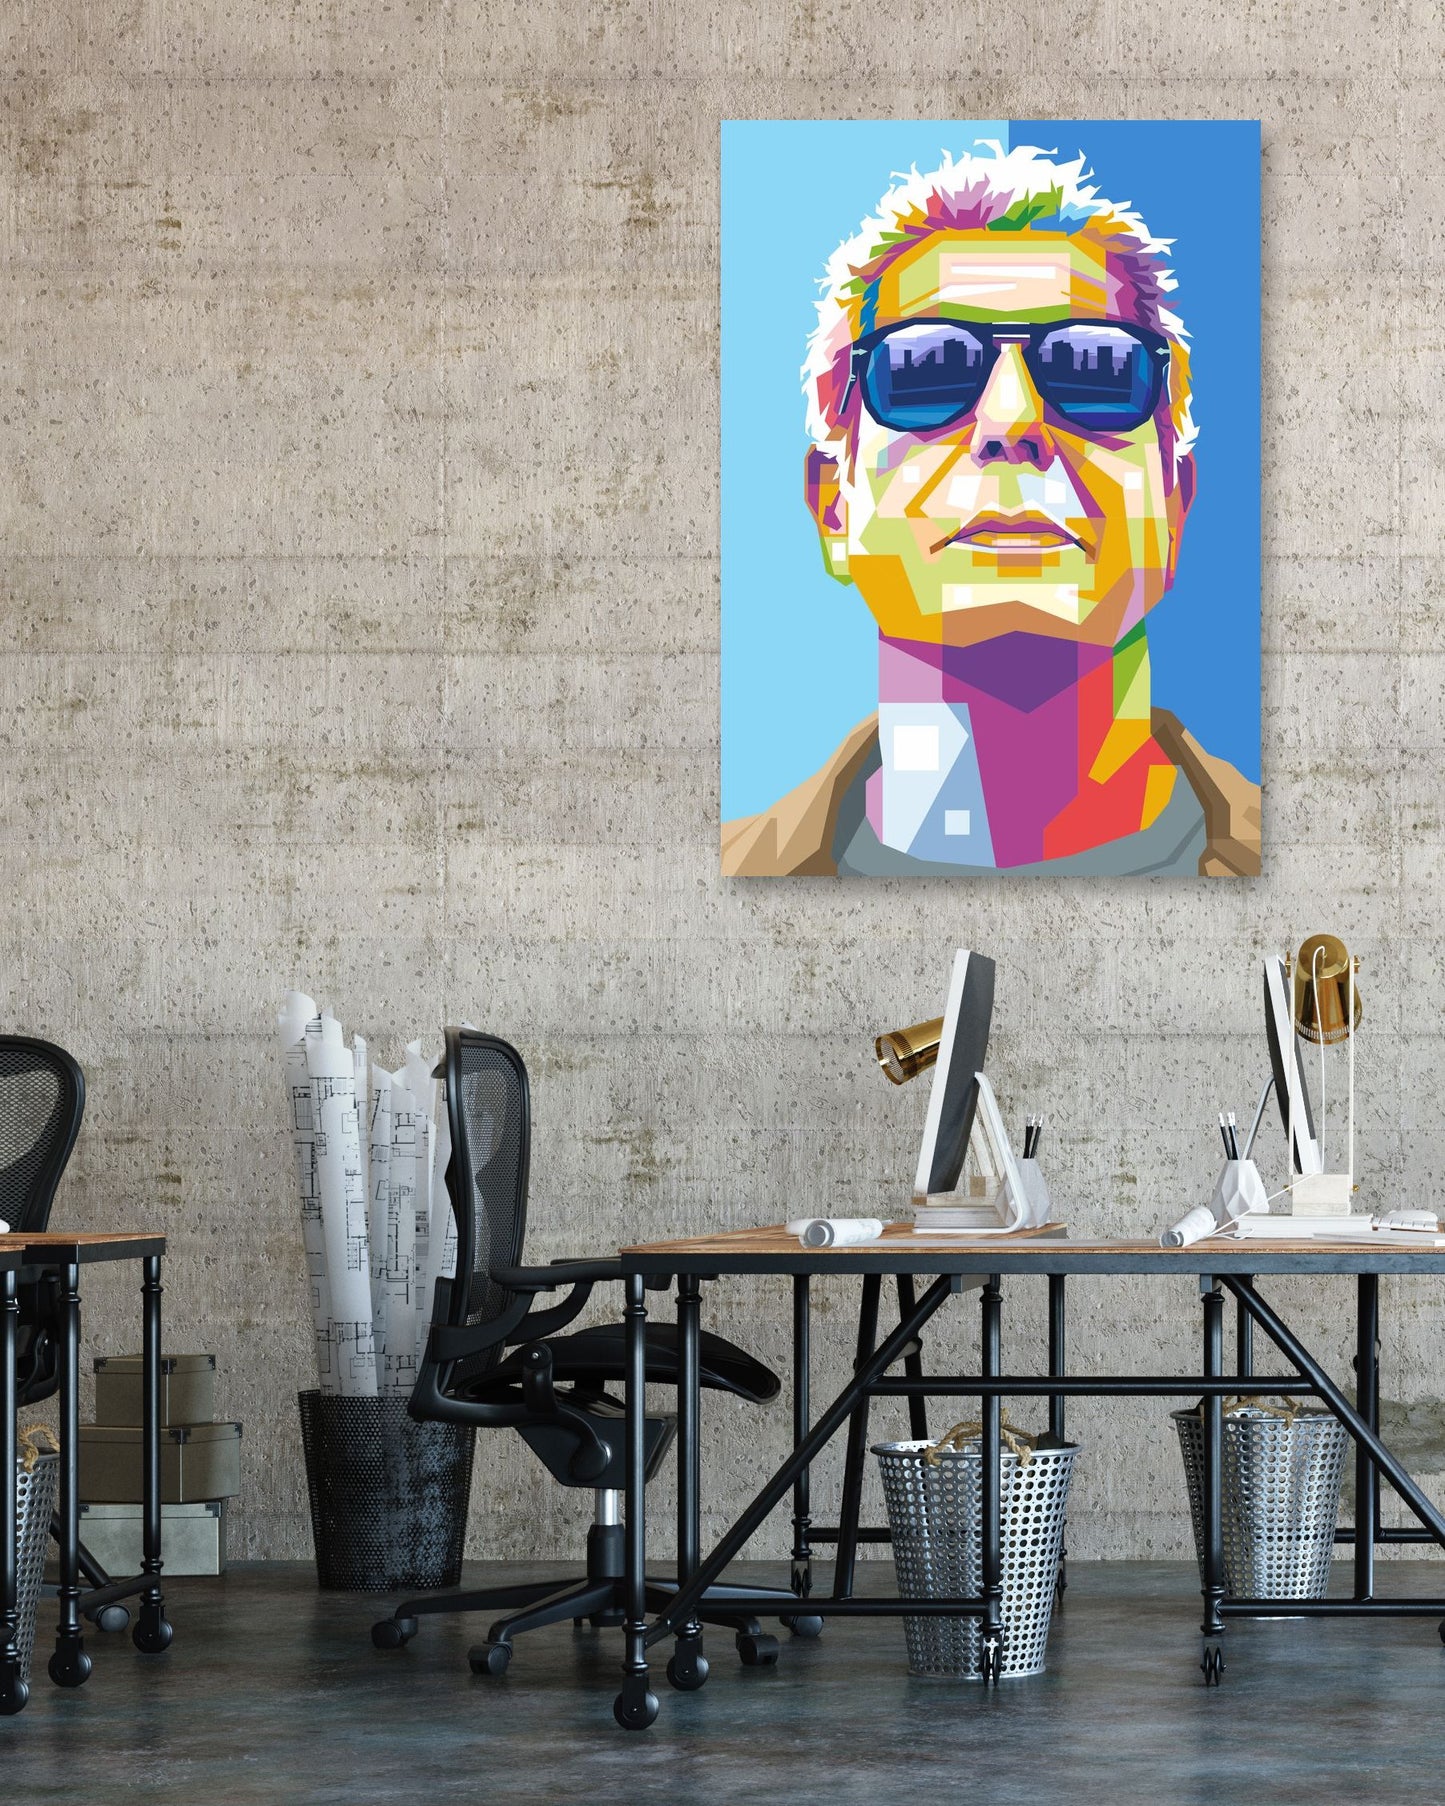 Anthony Bourdain in Pop Art - @WpapArtist